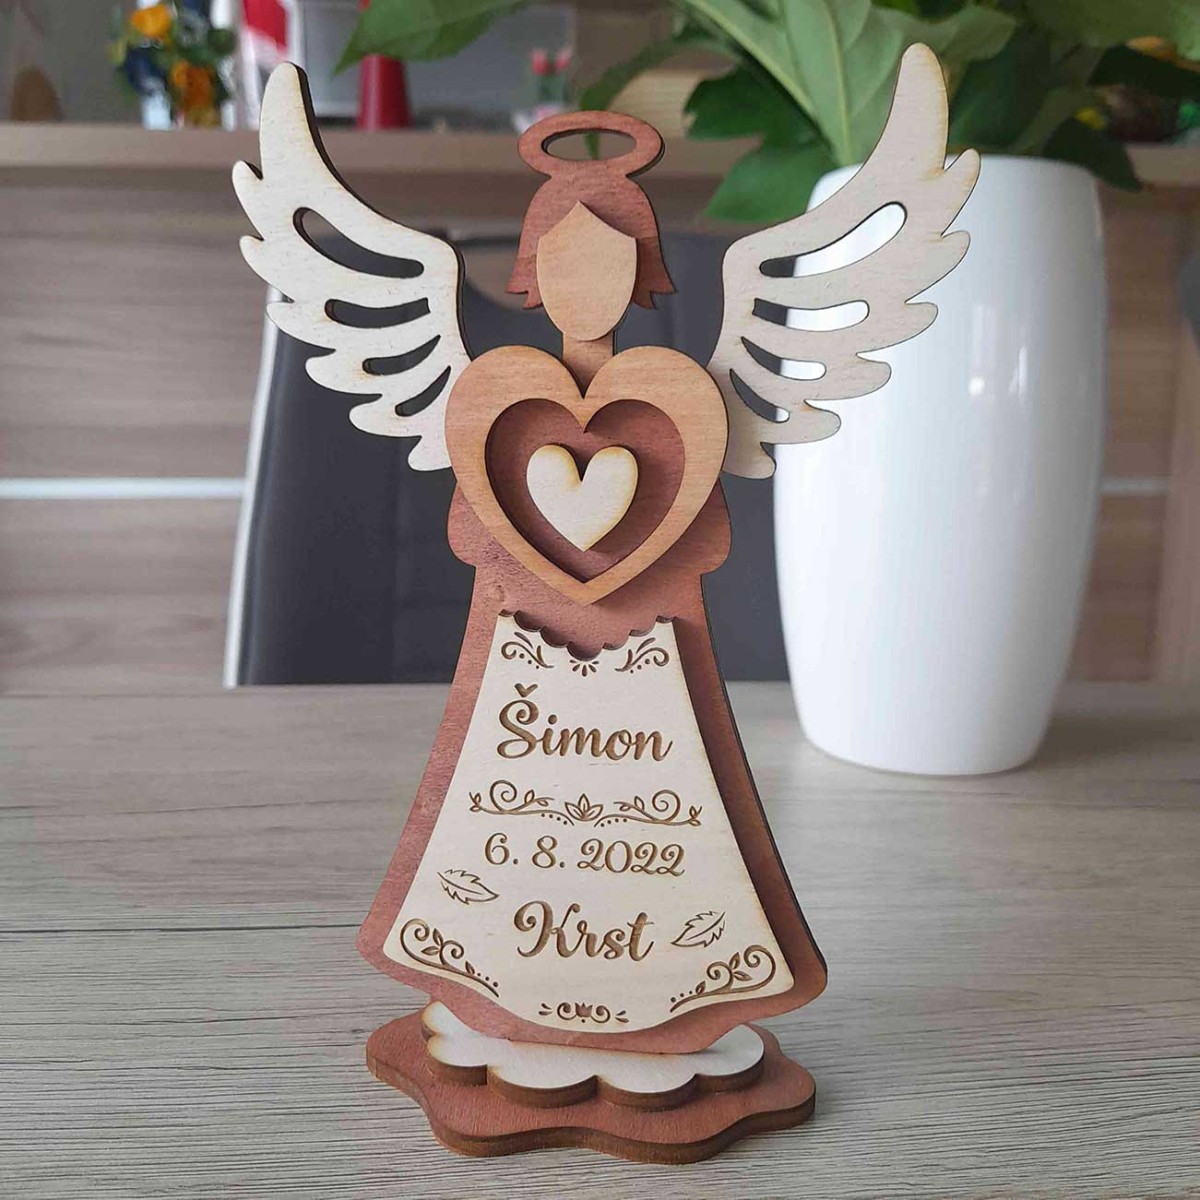 Drevený anjel s gravírovaným textom bude originálnym darčekom na krstiny pre bábätko.